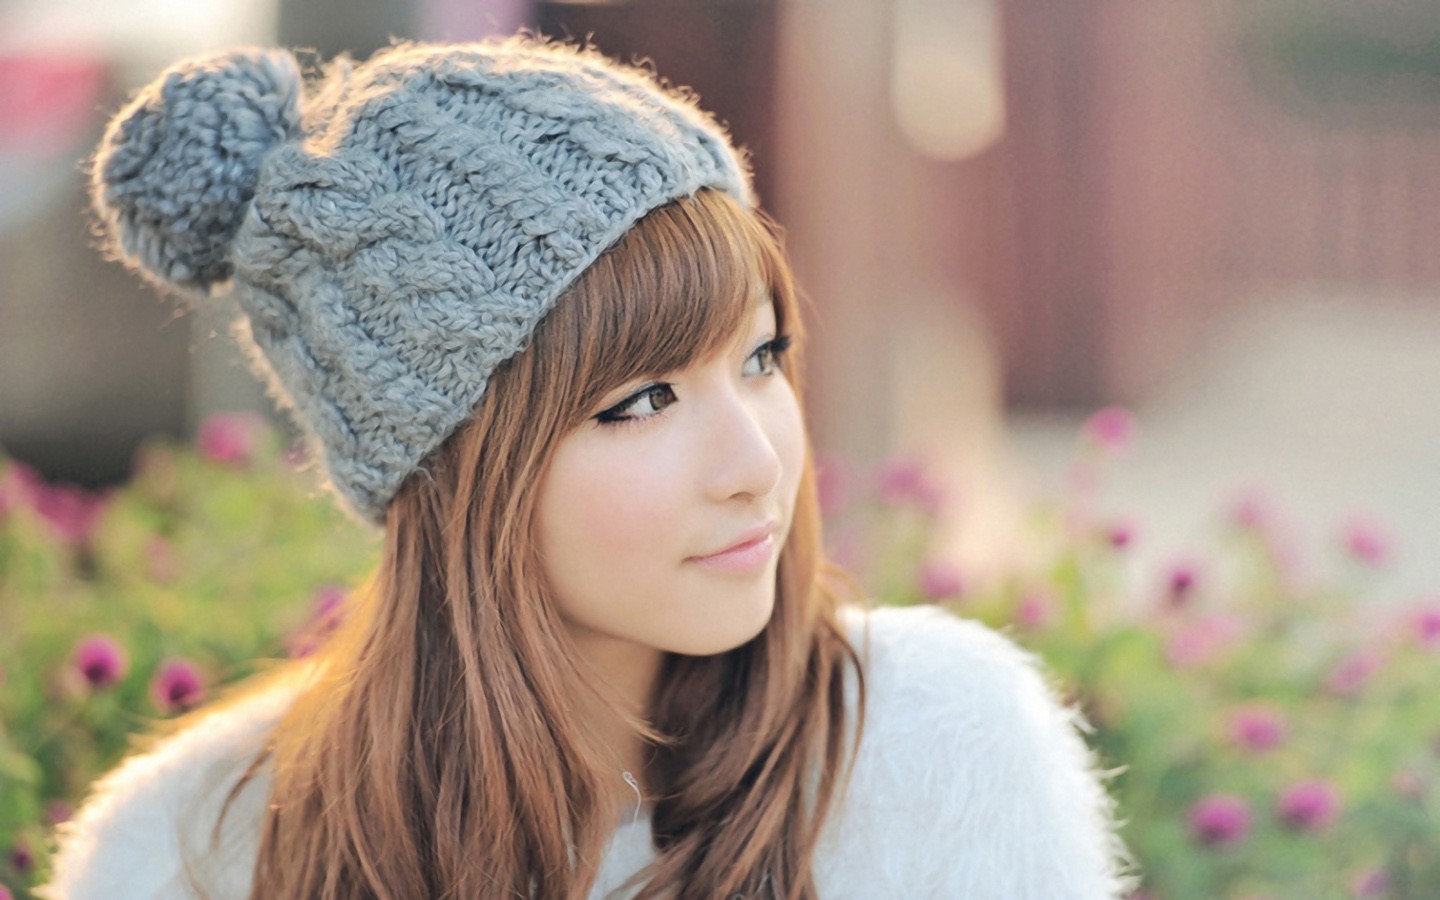 People 1440x900 knit hat Asian women outdoors bokeh women model millinery auburn hair brown eyes looking away